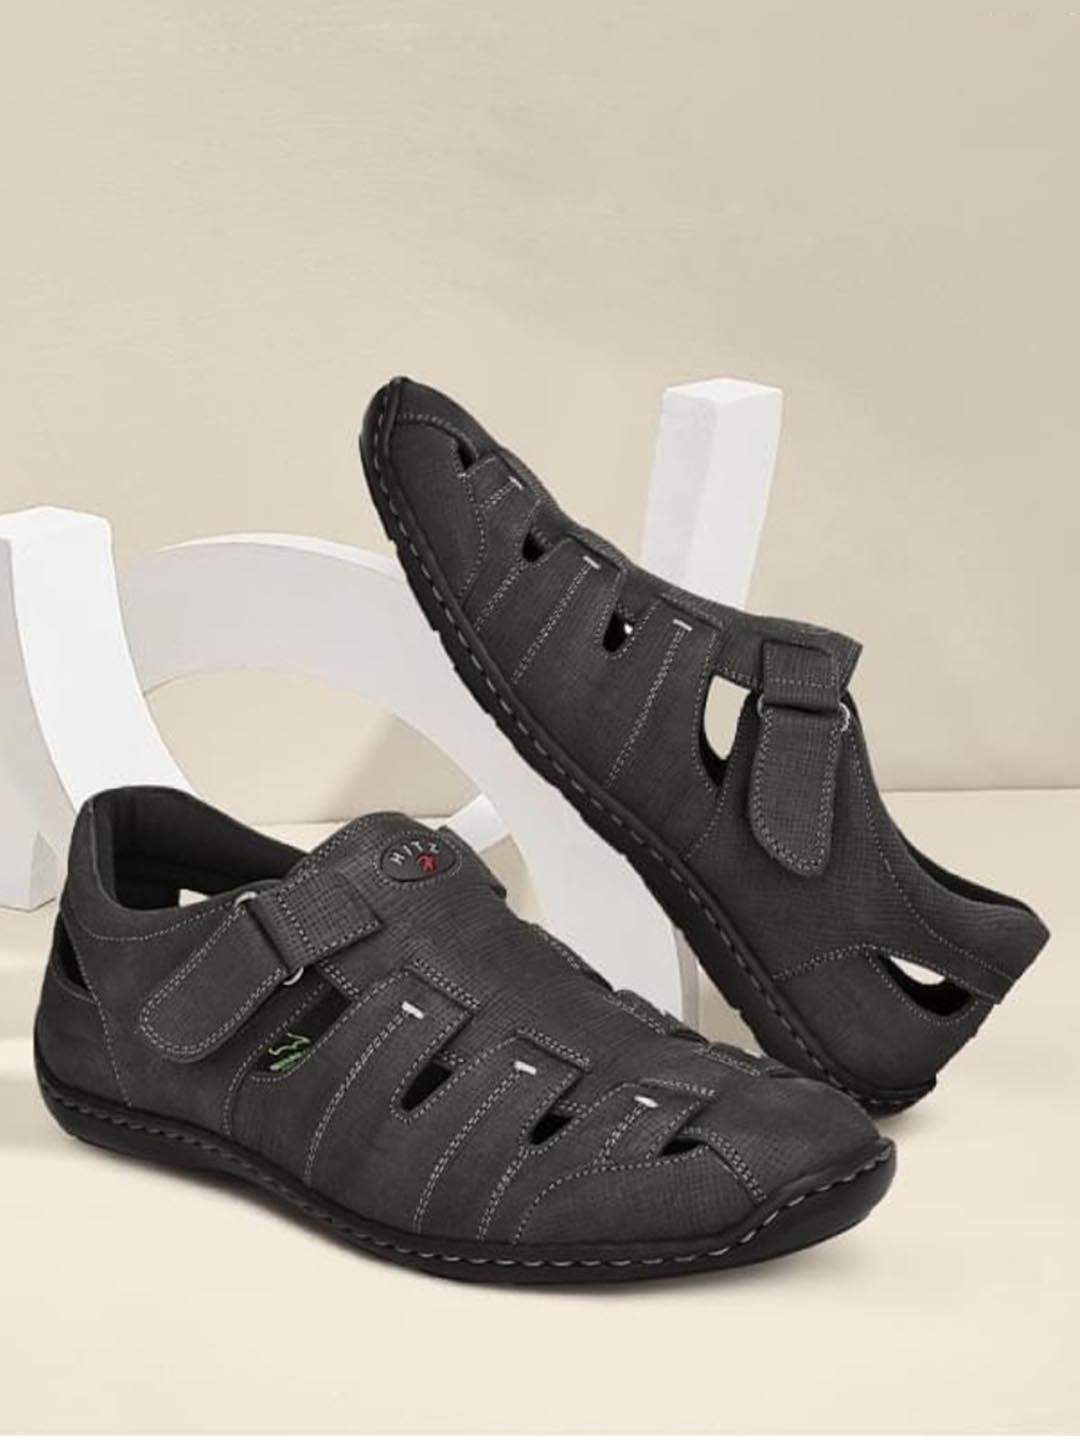 Hitz Men Black Leather Shoe-Style Sandals